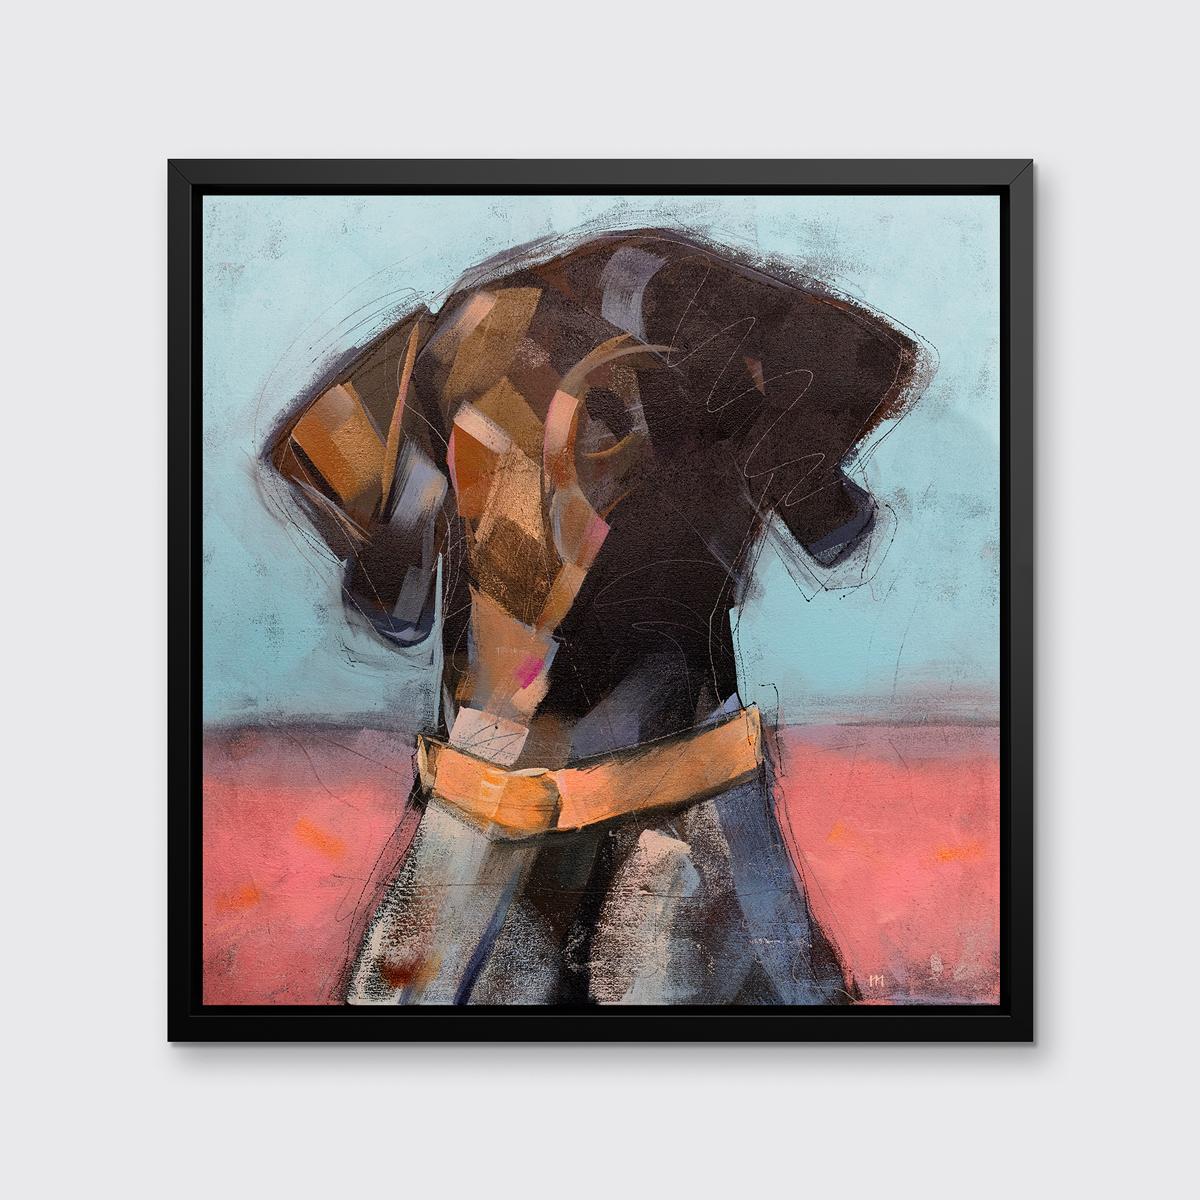 Cette impression abstraite d'un chien par l'artiste Russell Miyaki présente une palette vibrante, avec un chien marron à partir des épaules, portant un collier orange vif devant un fond lumineux, mi-rouge, mi-bleu. 

Cette impression giclée en